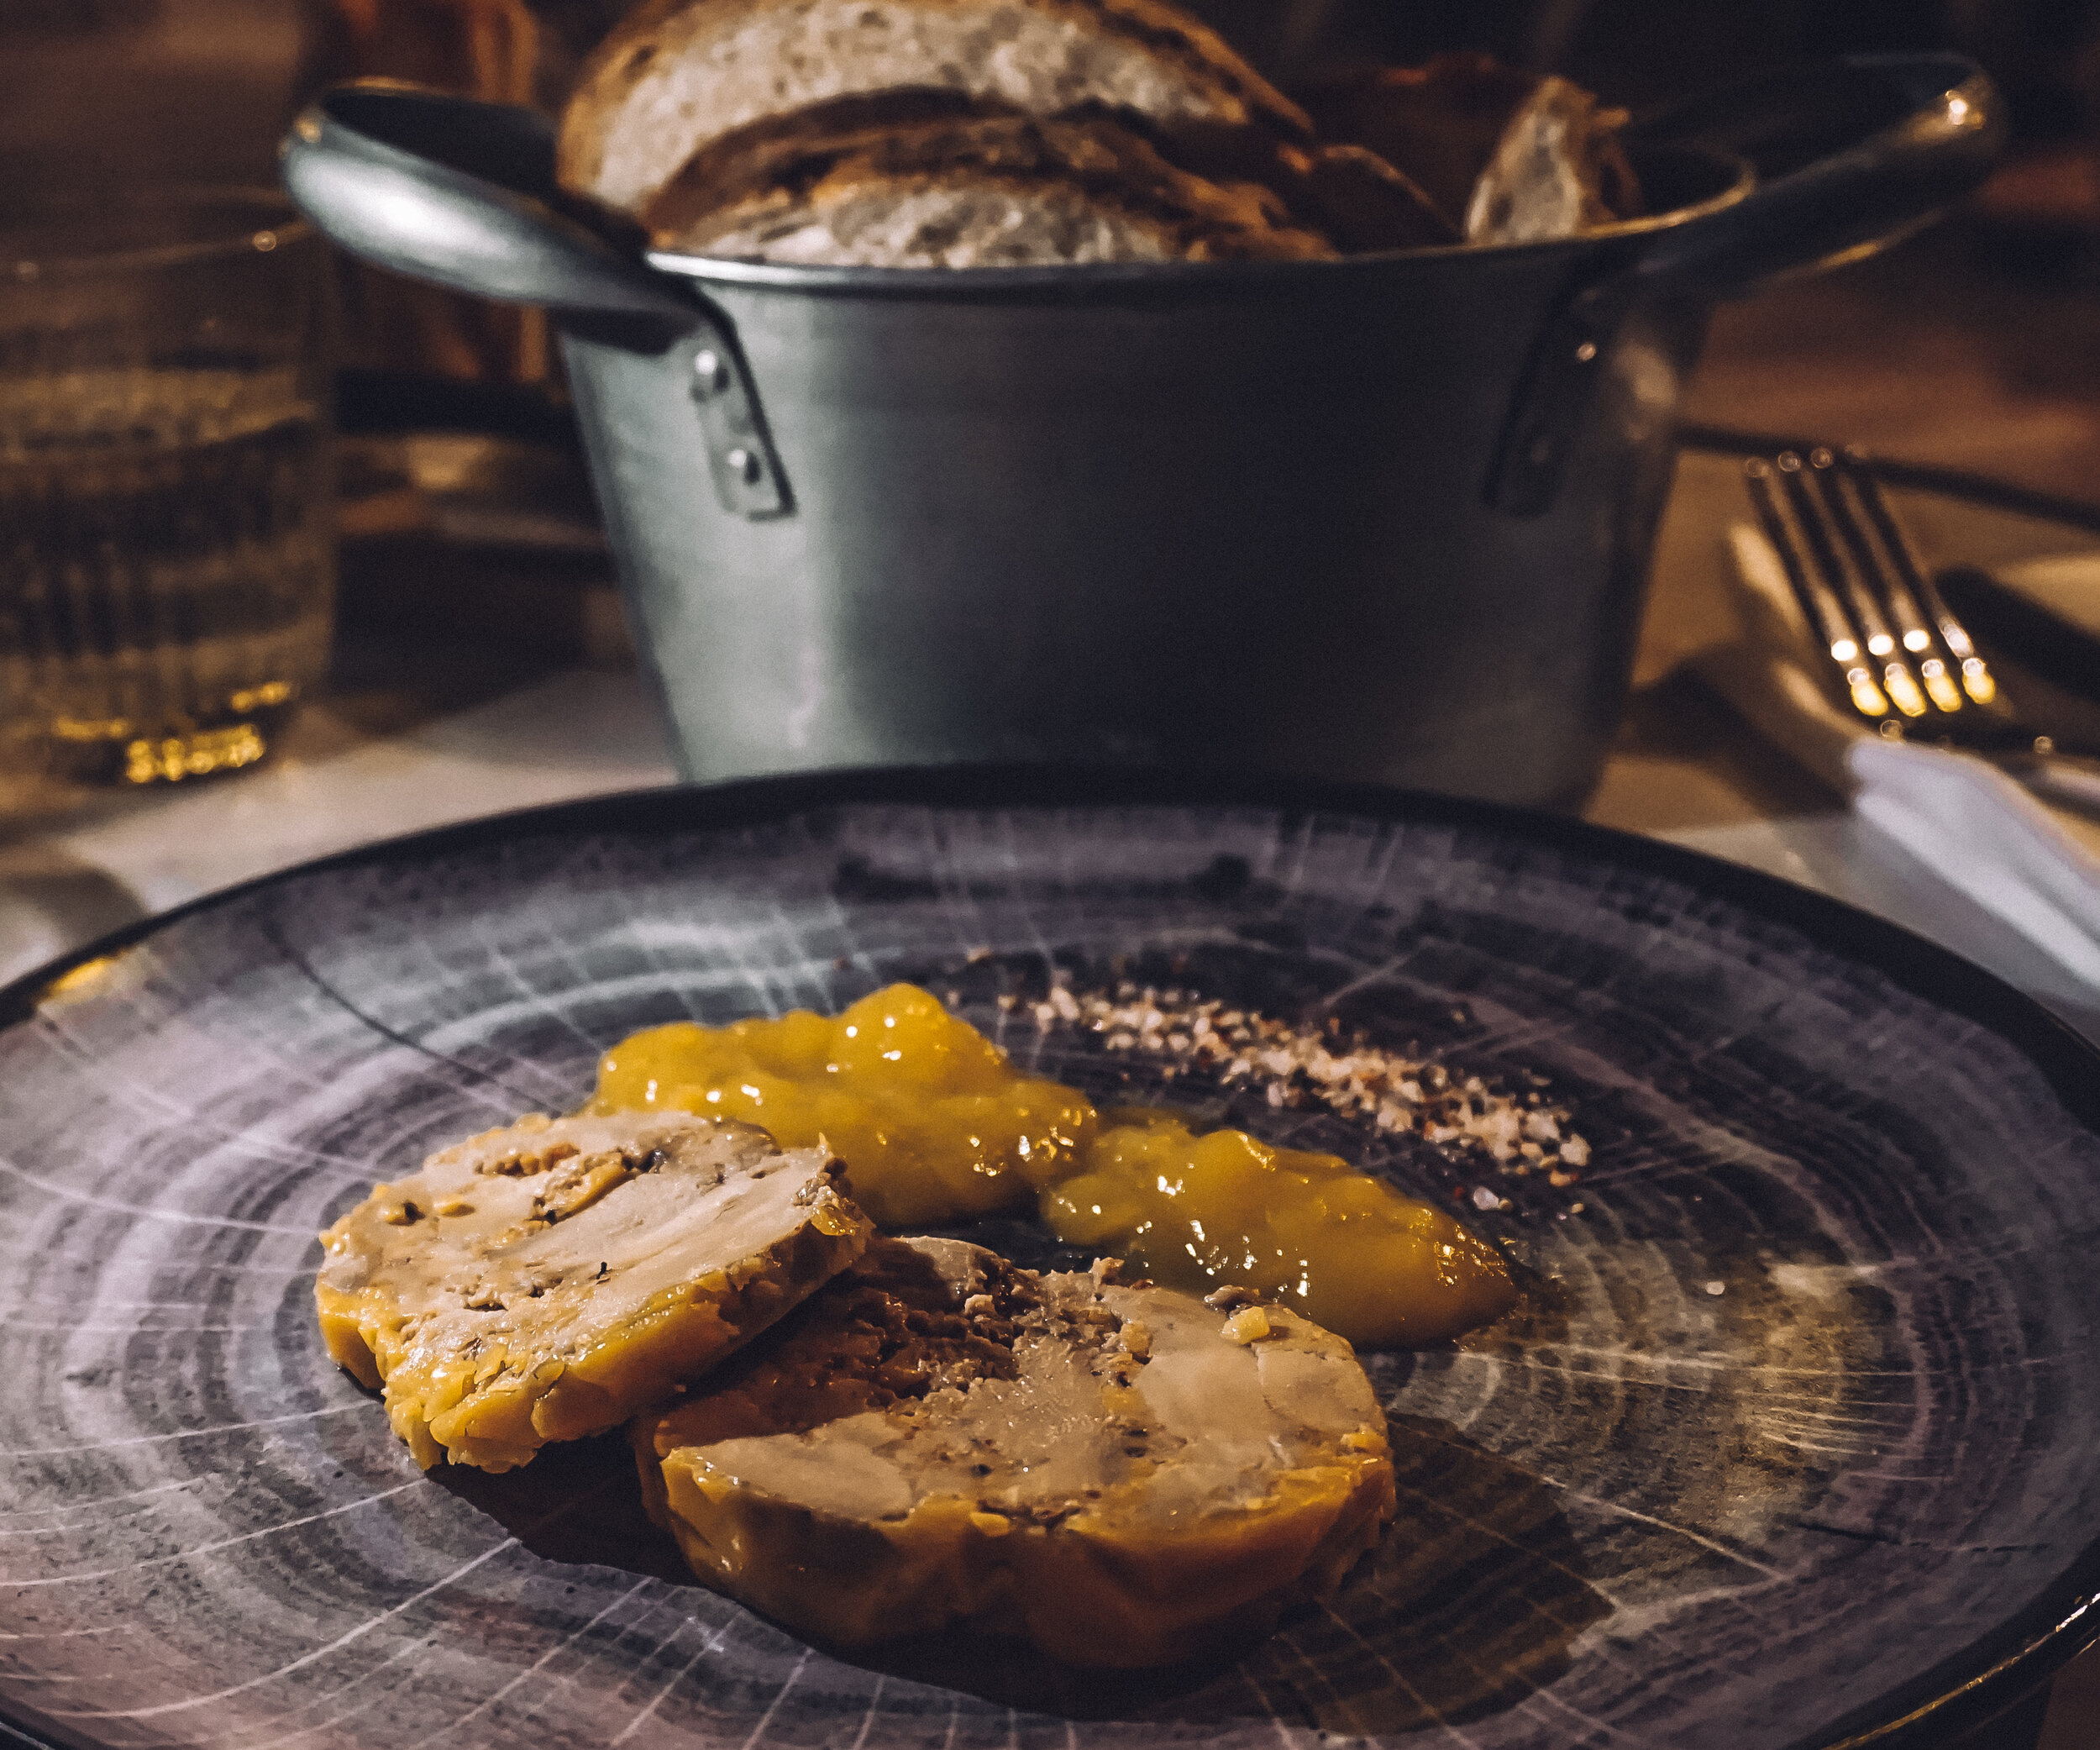 Foie gras au piment d'espelette, housemade chutney